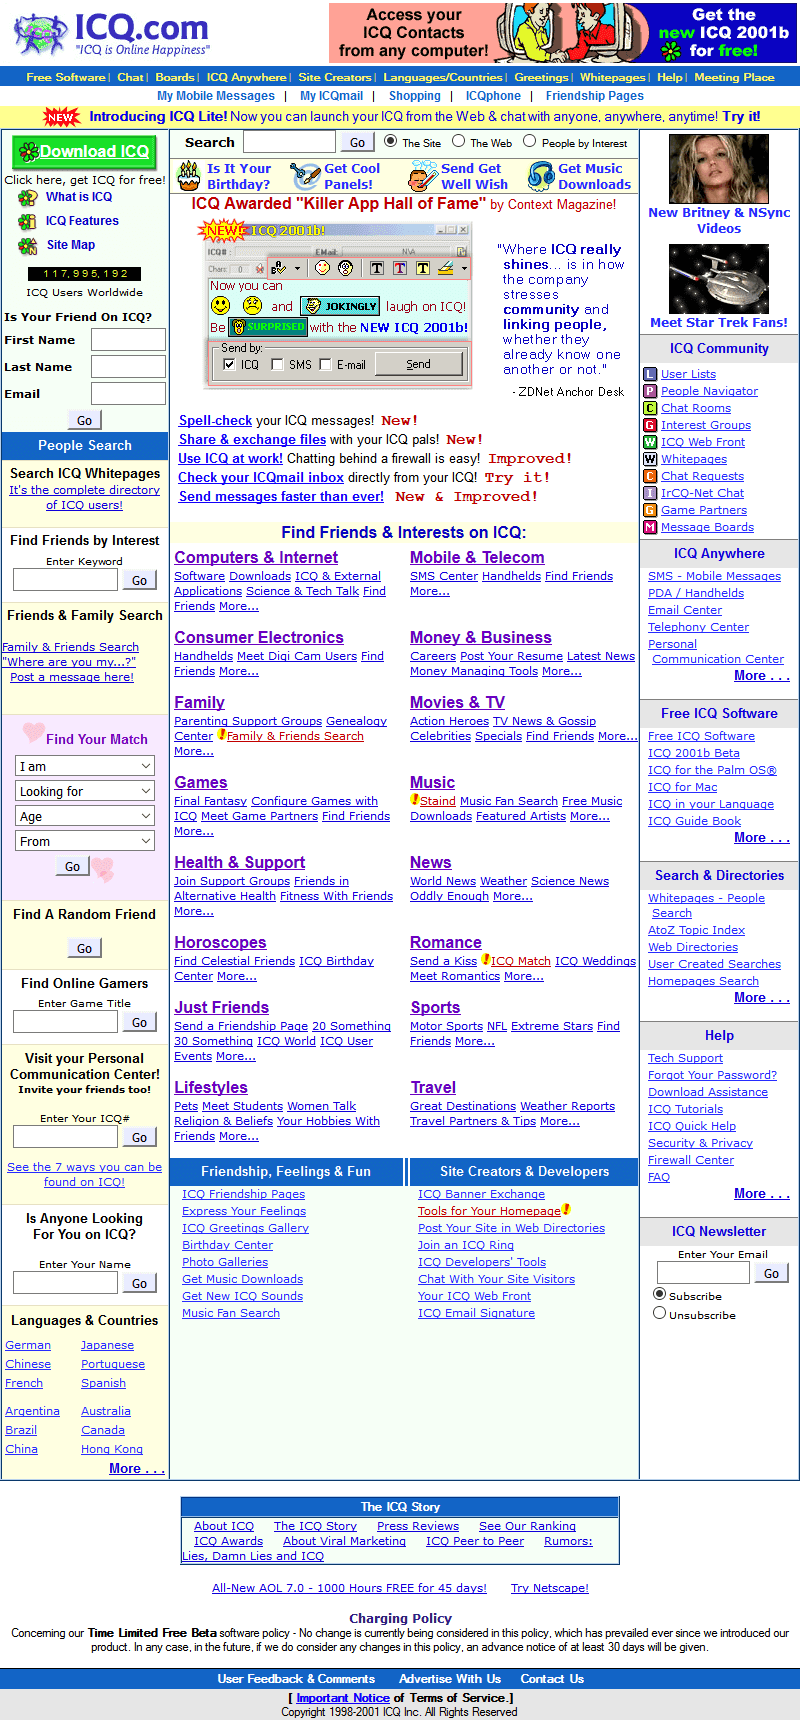 ICQ website in 2001